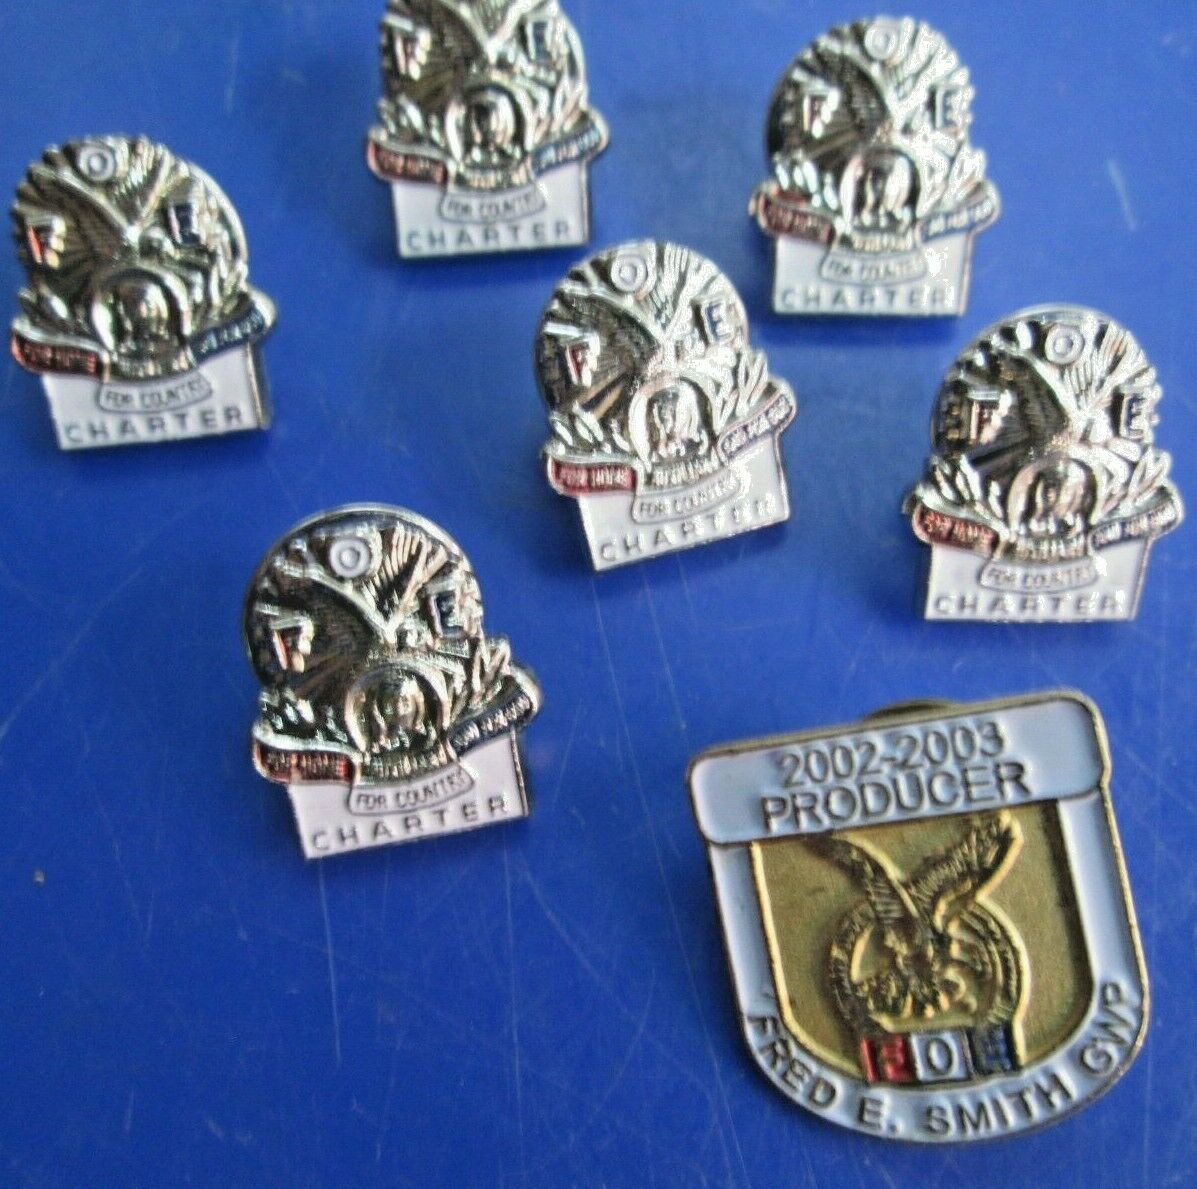 Vintage Lot Of 7 Foe Fraternal Order Of Elks Lapel Pins 1-2002-2003 Producer